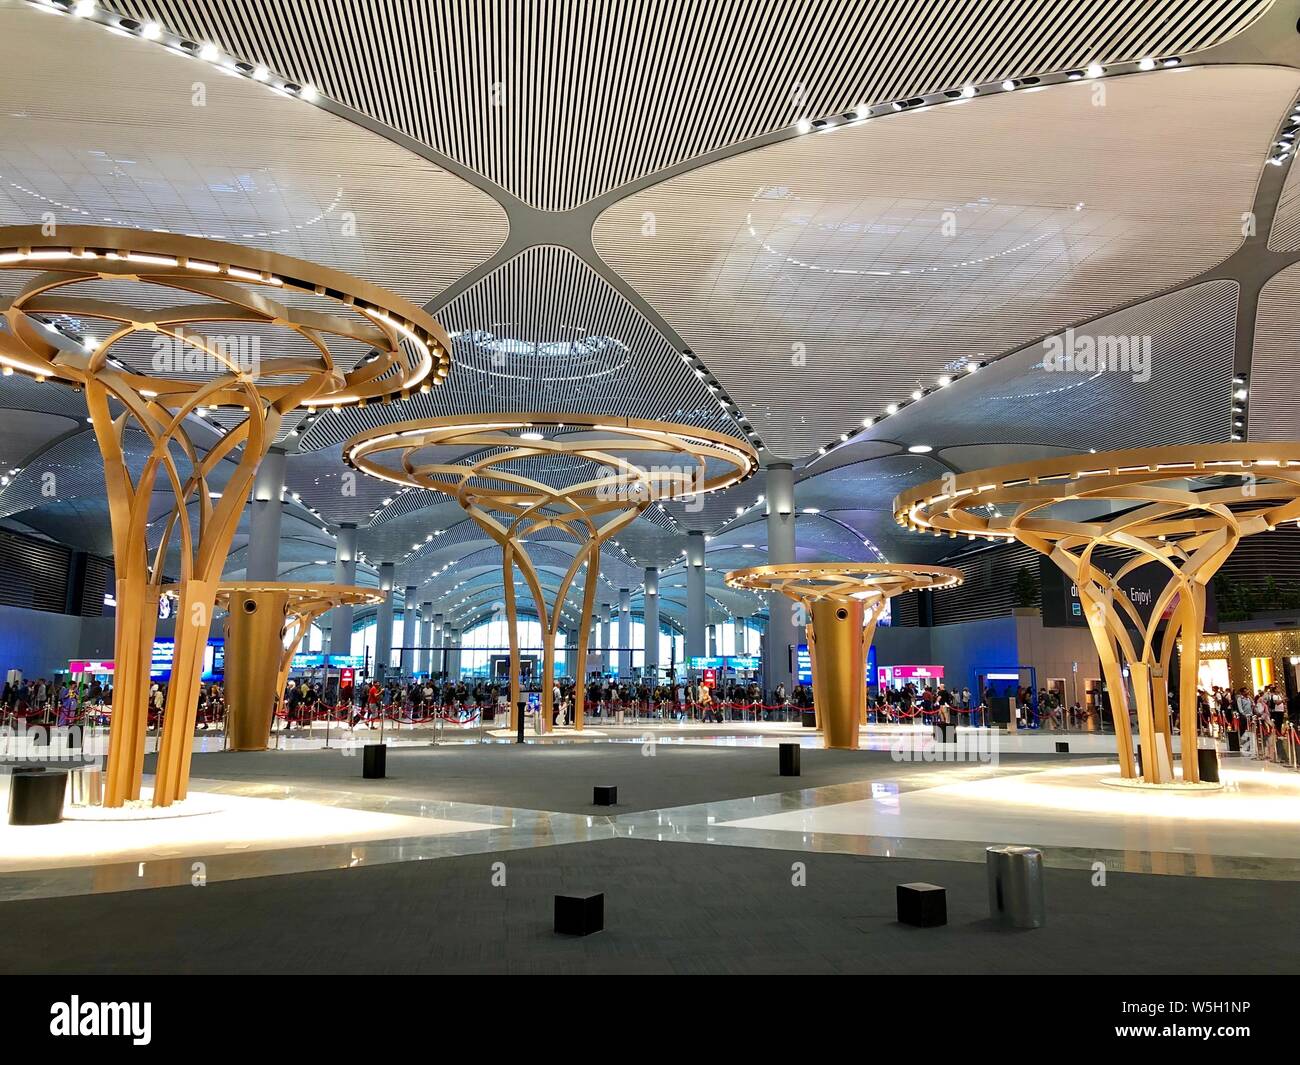 Vue de l'intérieur du nouvel aéroport d'Istanbul. Nouvelles l'aéroport d'Istanbul est le principal aéroport international situé à Istanbul, Turquie. Banque D'Images